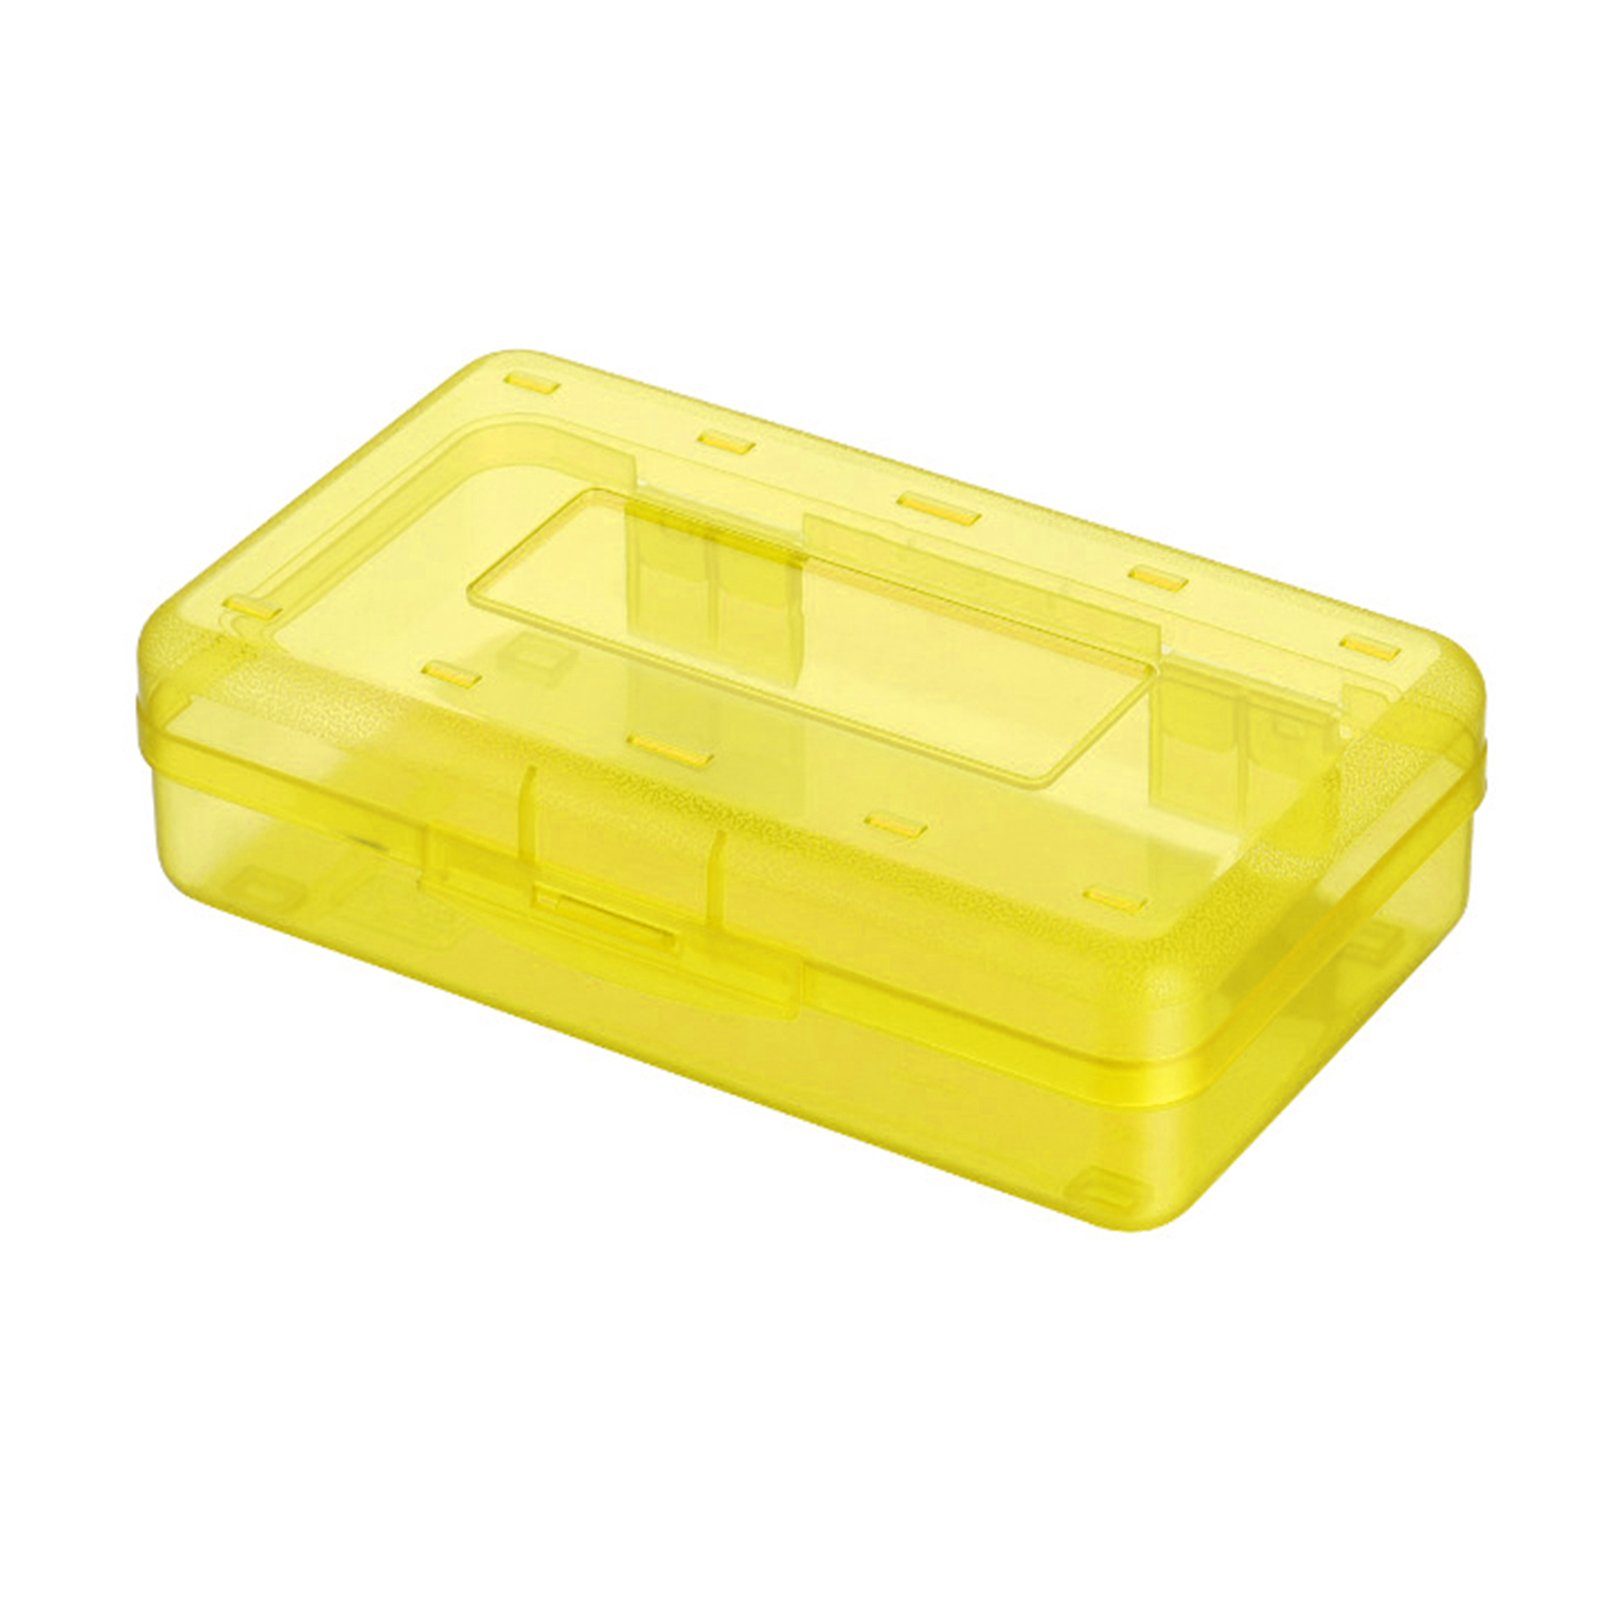 Blusmart Federtasche Schöne Transparente/bunte Bleistiftbox, Tragbare Federtasche, Bleistifttasche yellow